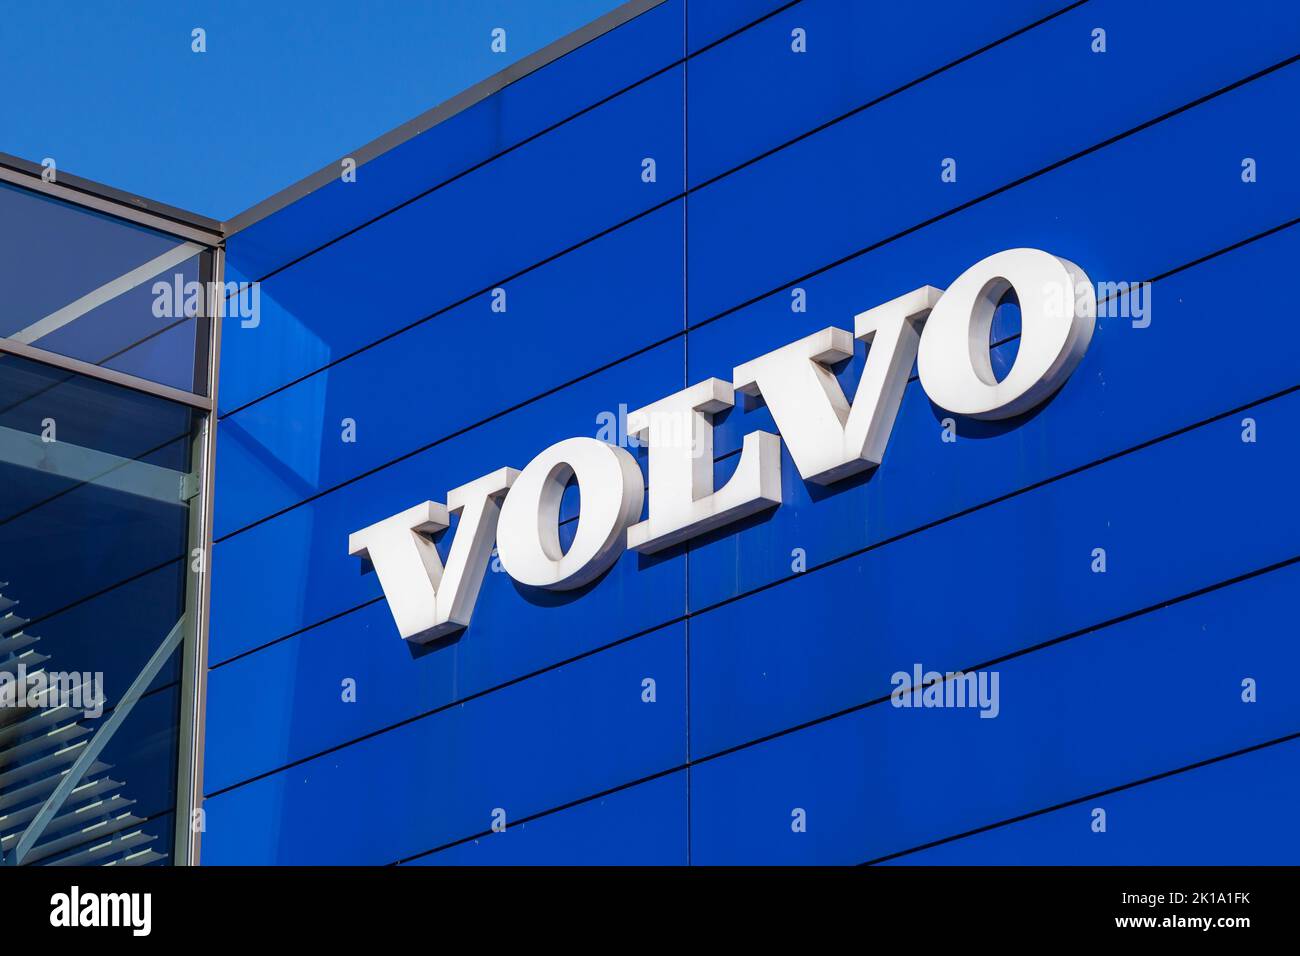 San Petersburgo, Rusia - 09 de agosto de 2022: Texto de la marca Volvo montado en la pared azul de un centro de venta de automóviles Foto de stock